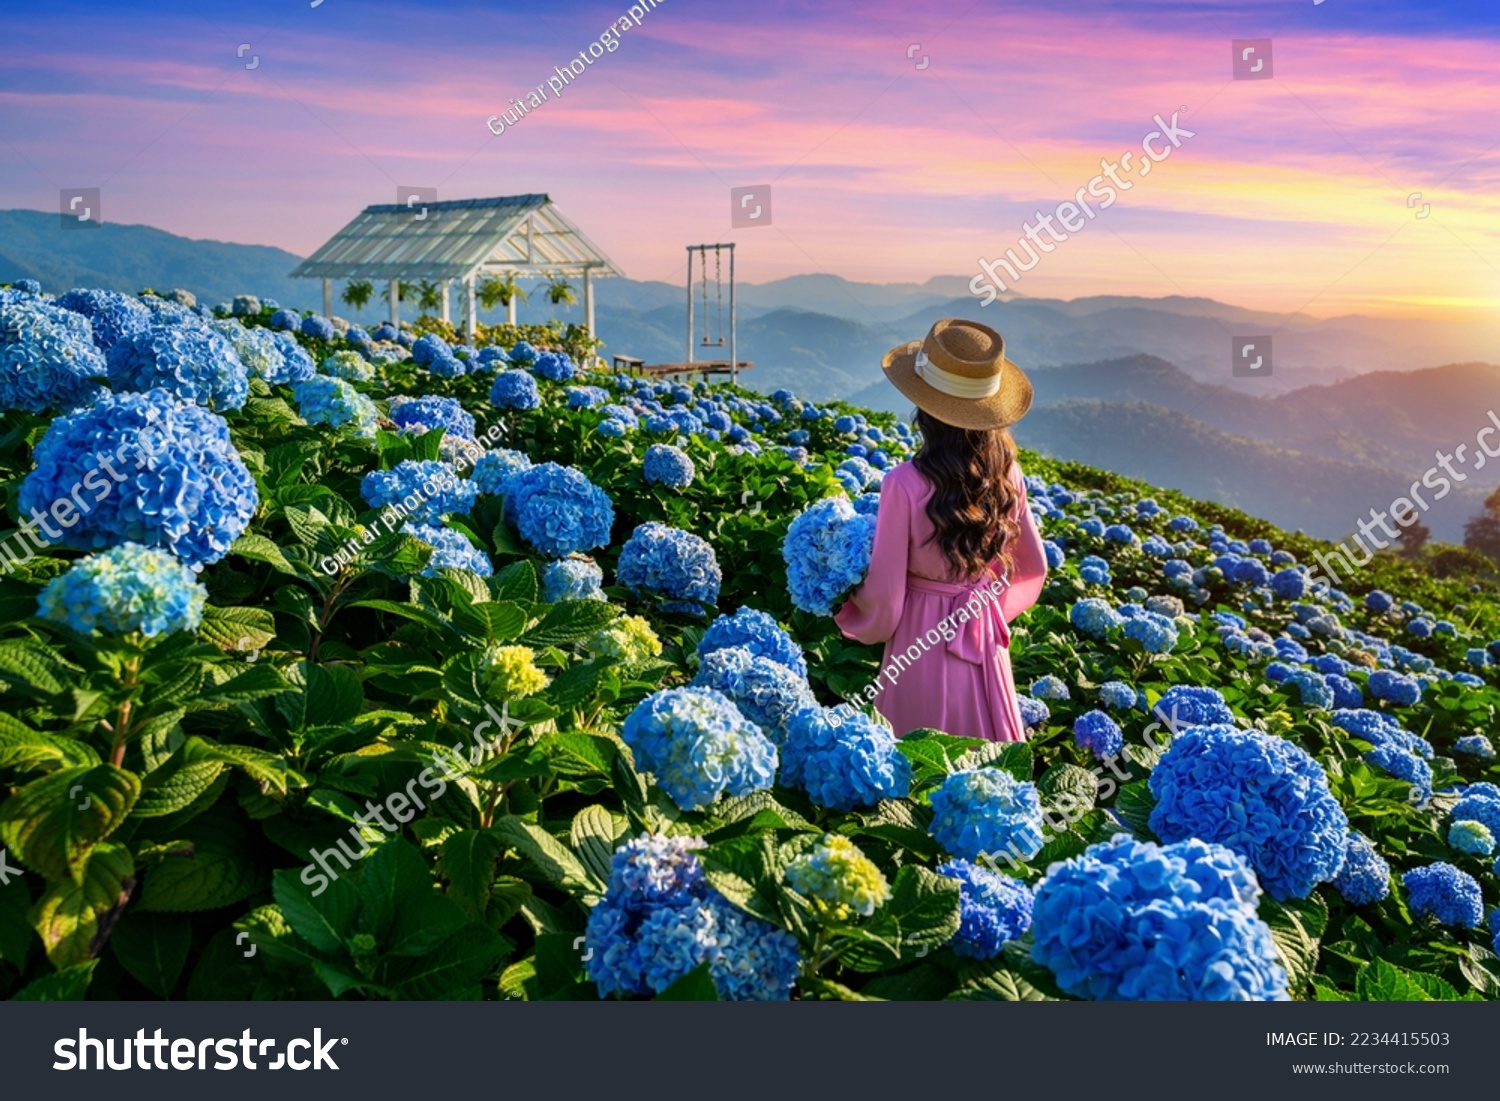 Beautiful girl enjoying blooming blue hydrangeas flowers in garden, Chiang Rai, Thailand. #2234415503